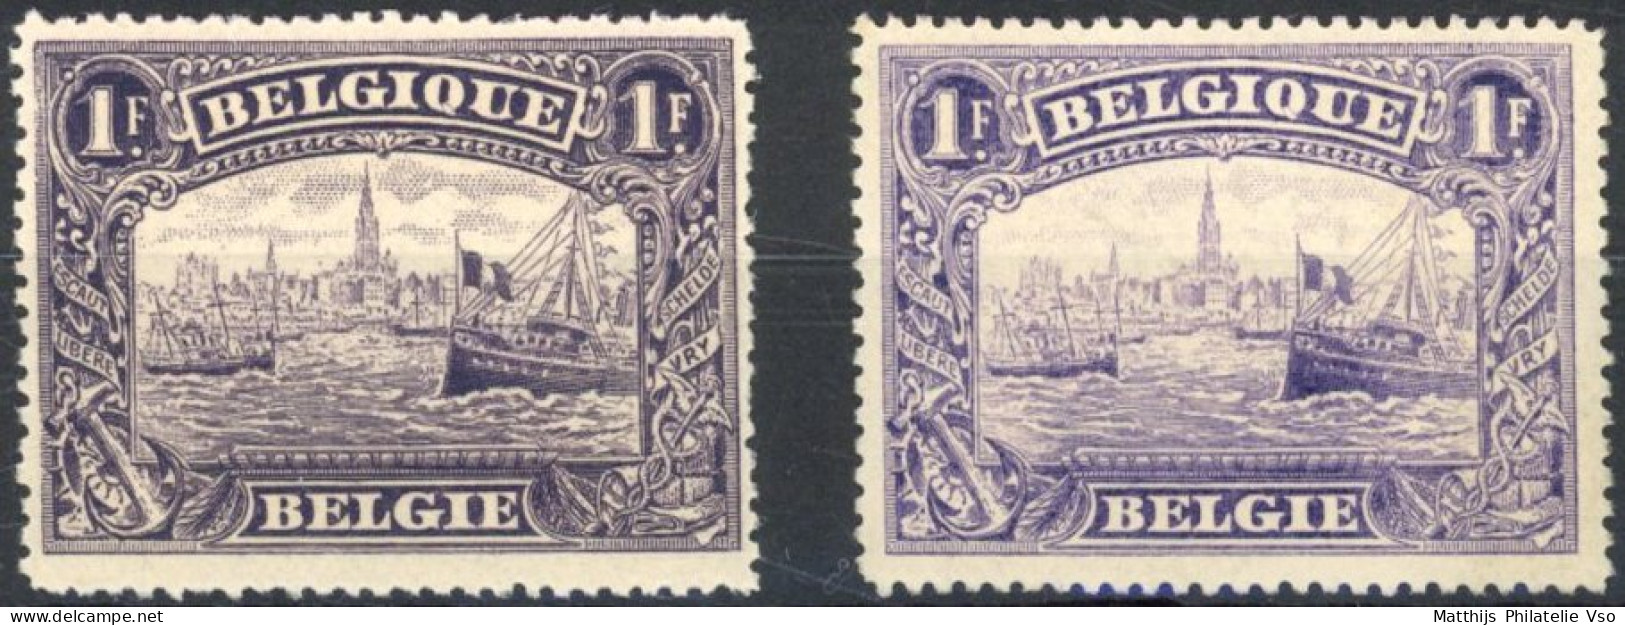 [** SUP] N° 145+145a, Anvers, Les 2 Nuances - Fraîcheur Postale - Cote: 305€ - 1915-1920 Albert I